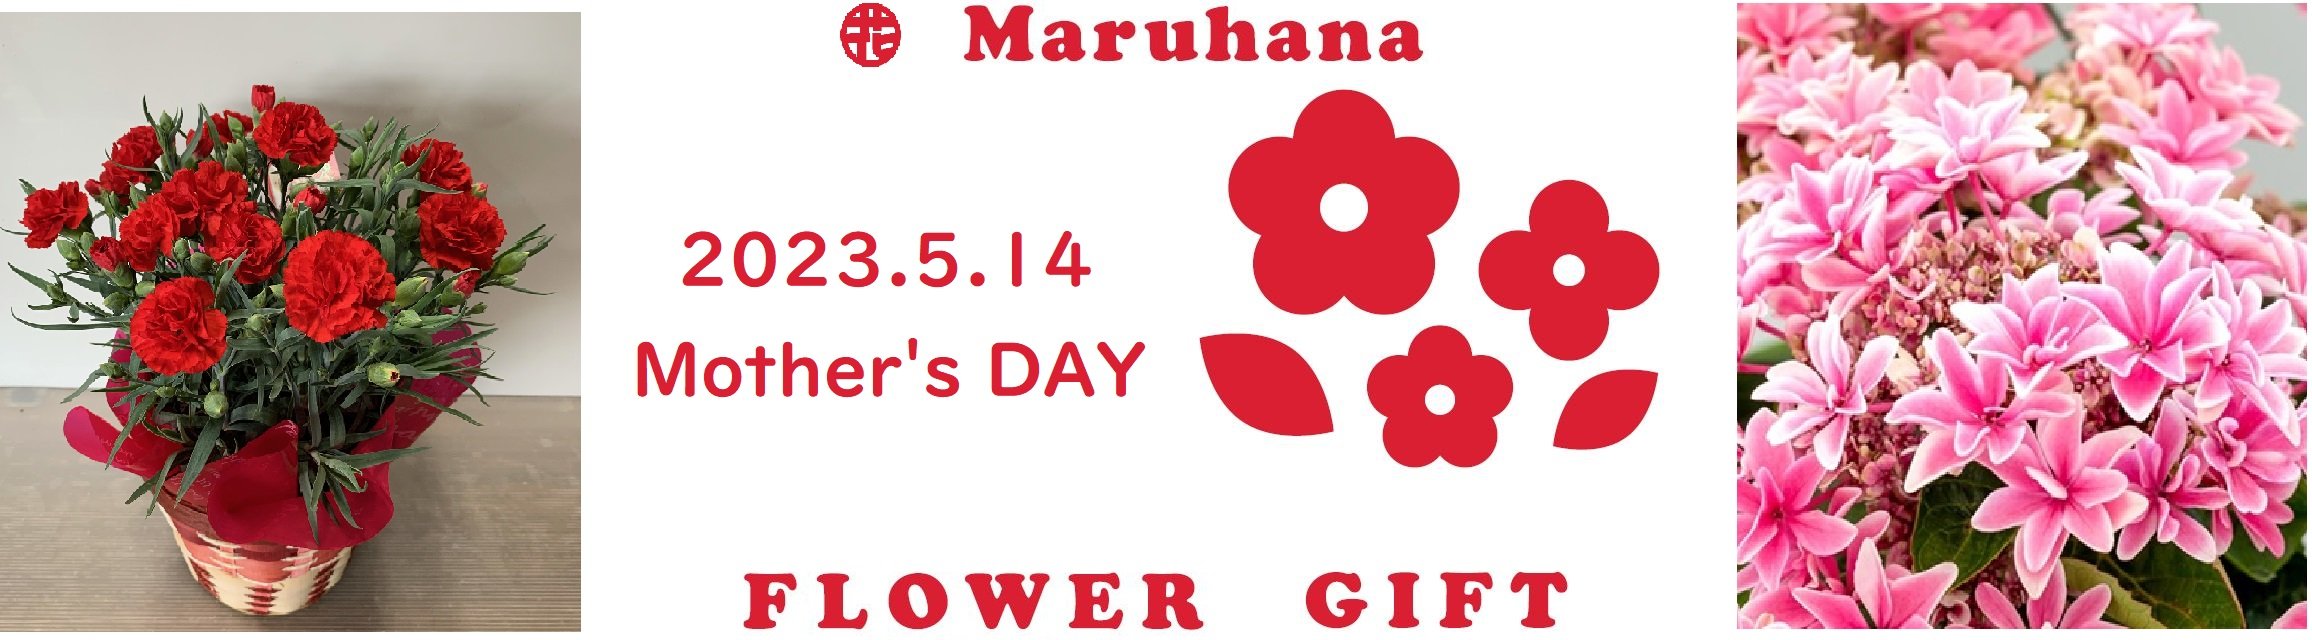 https://www.maruhana.biz/flower/images/mothersday.JPG